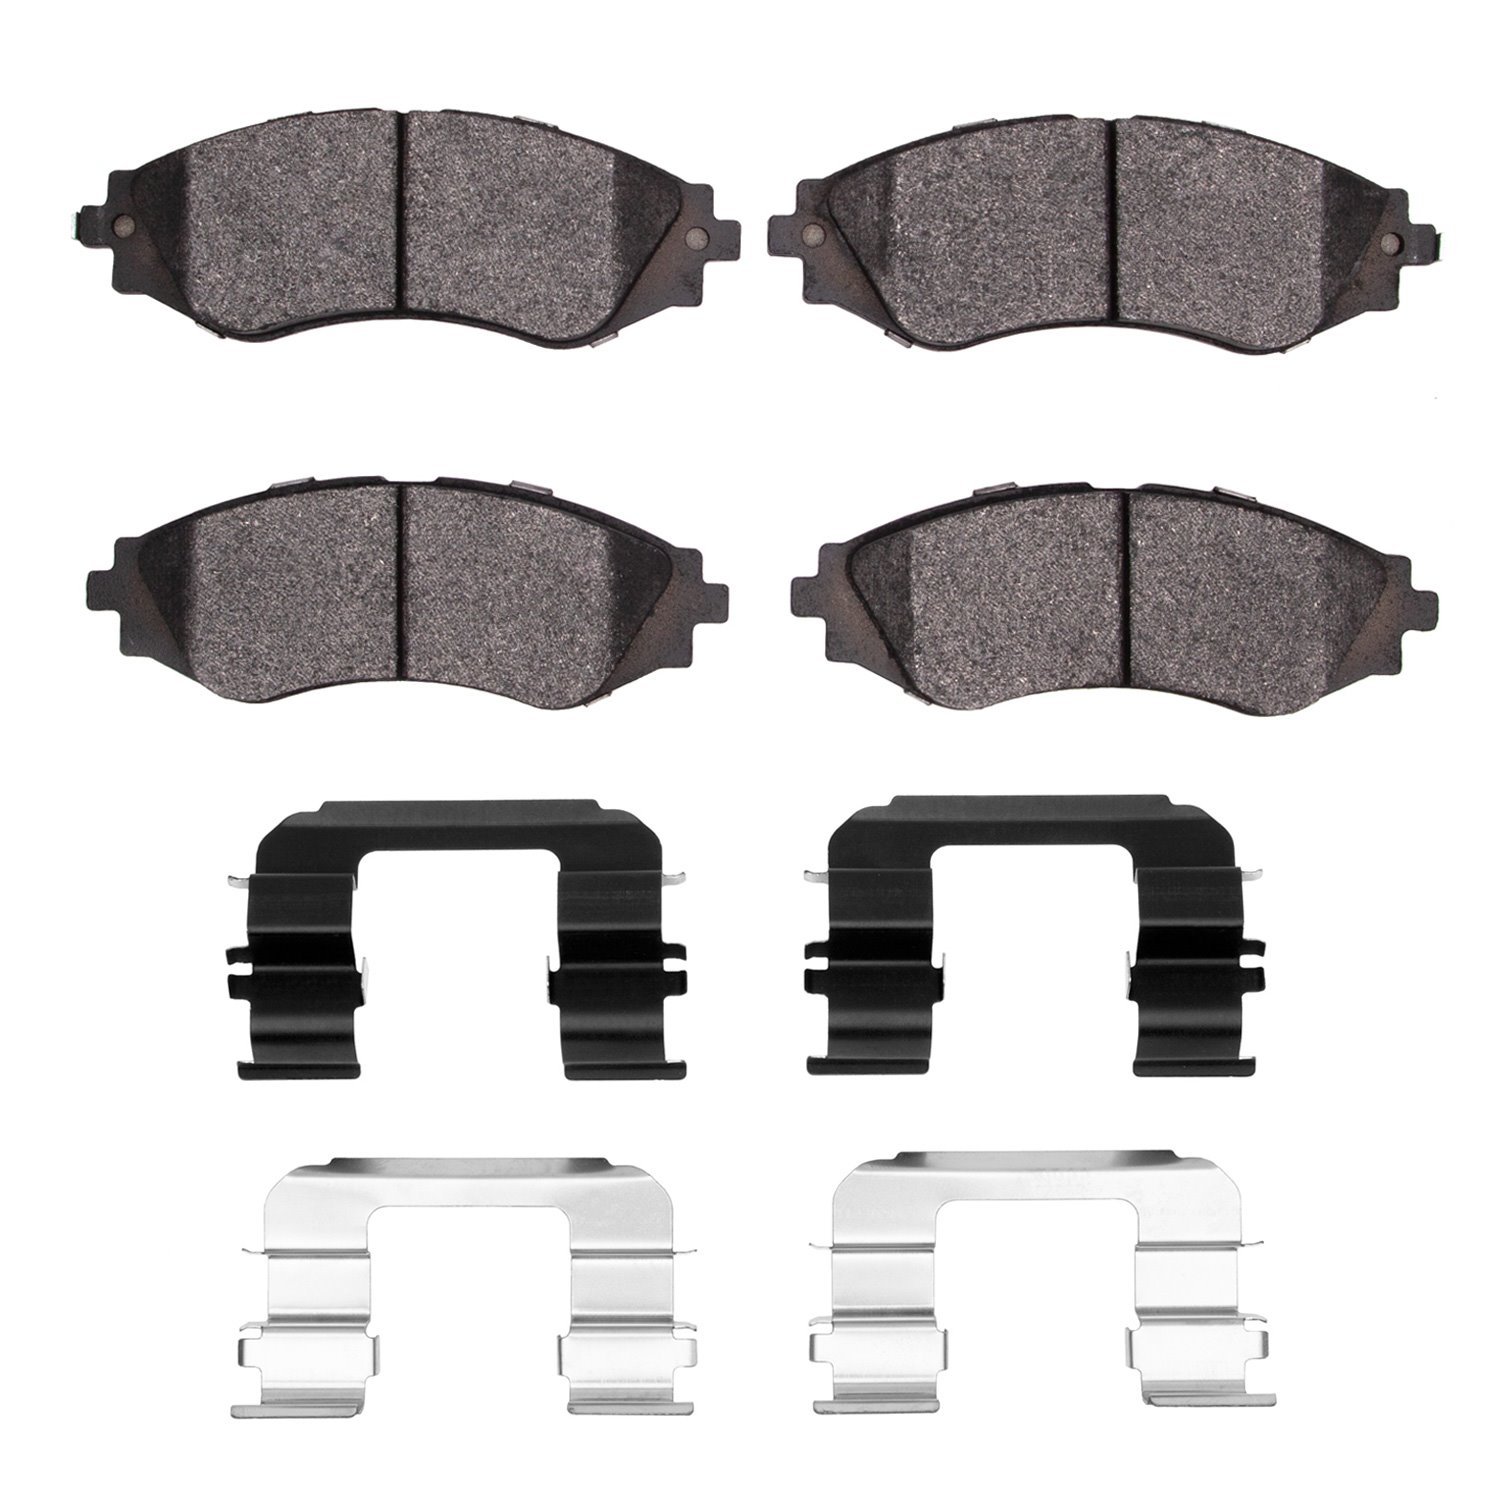 1310-0797-01 3000-Series Ceramic Brake Pads & Hardware Kit, 1999-2017 GM, Position: Front